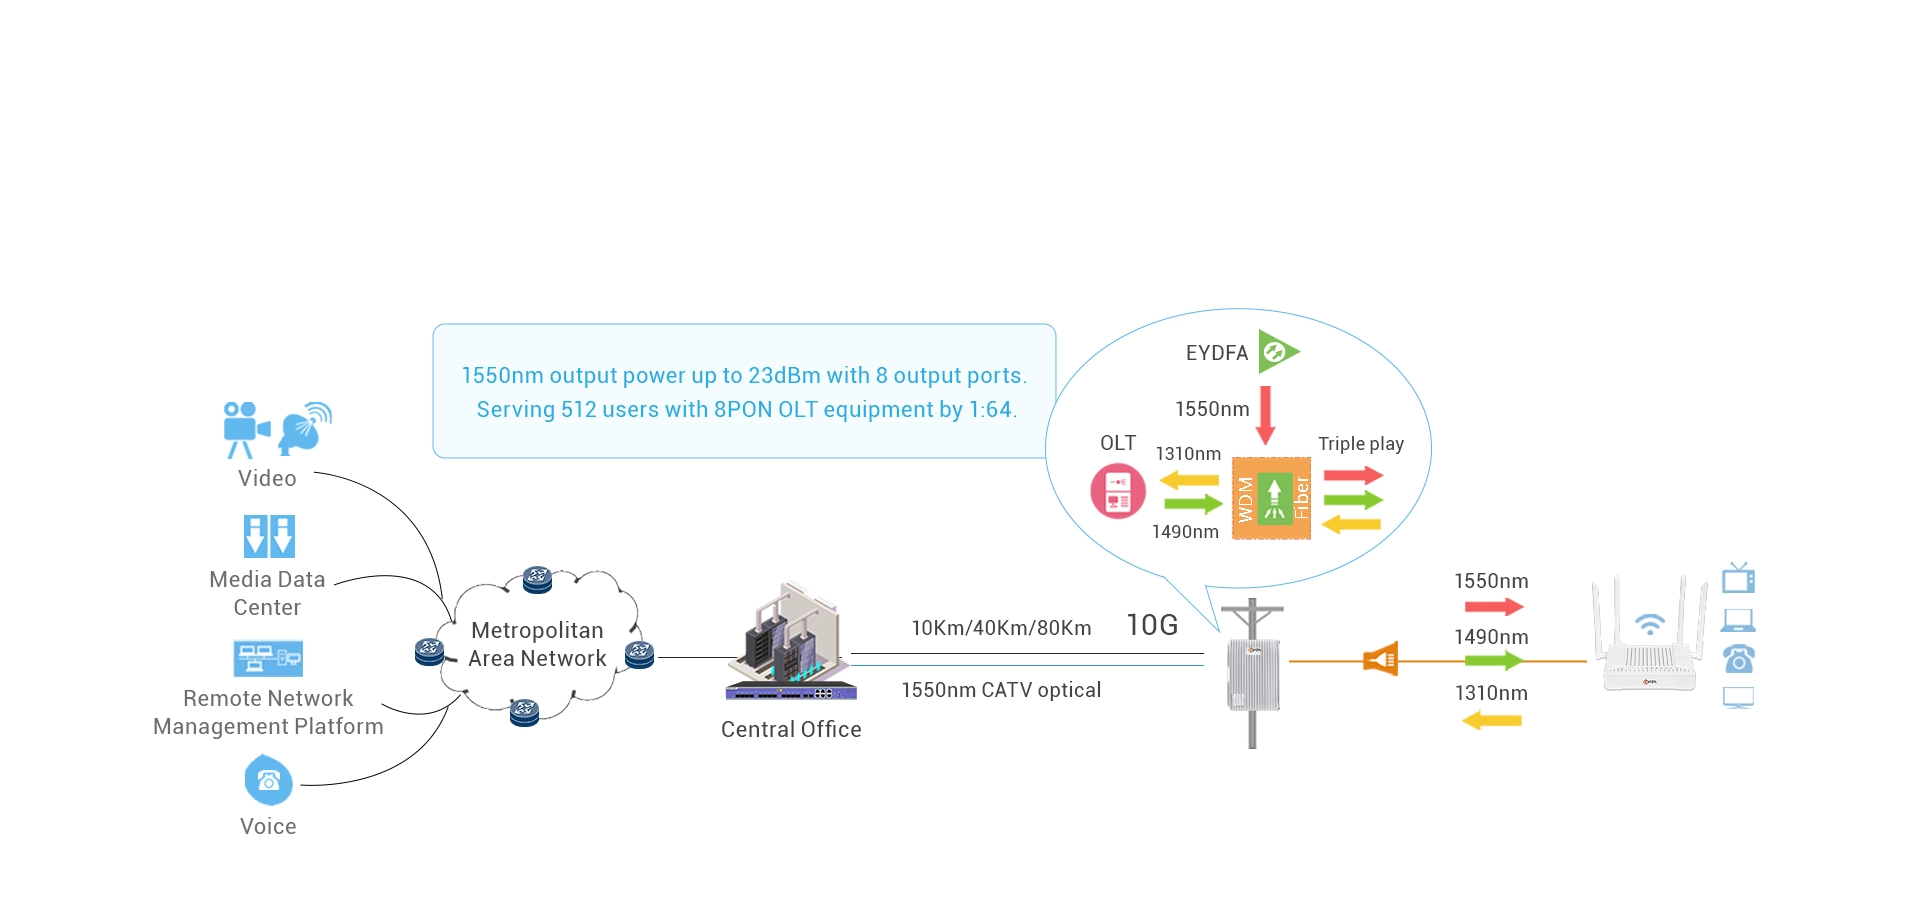 Solução integrada EYDFA para CATV MSO 1550nm RF Overlay (Opcional)